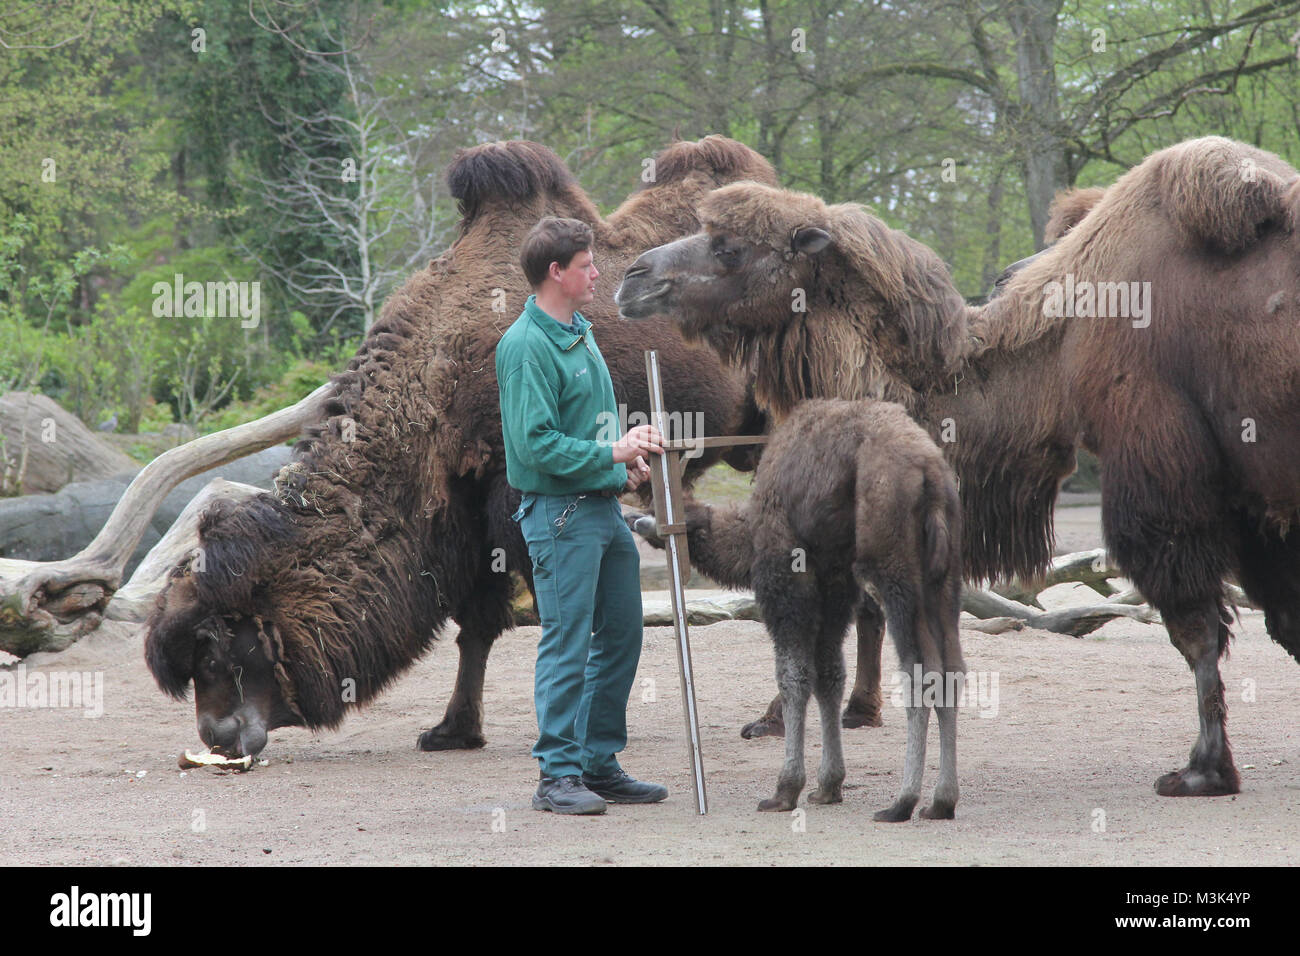 Kamele, Inventur im Tierpark Hagenbeck, 03.05.2016, Amburgo Foto Stock